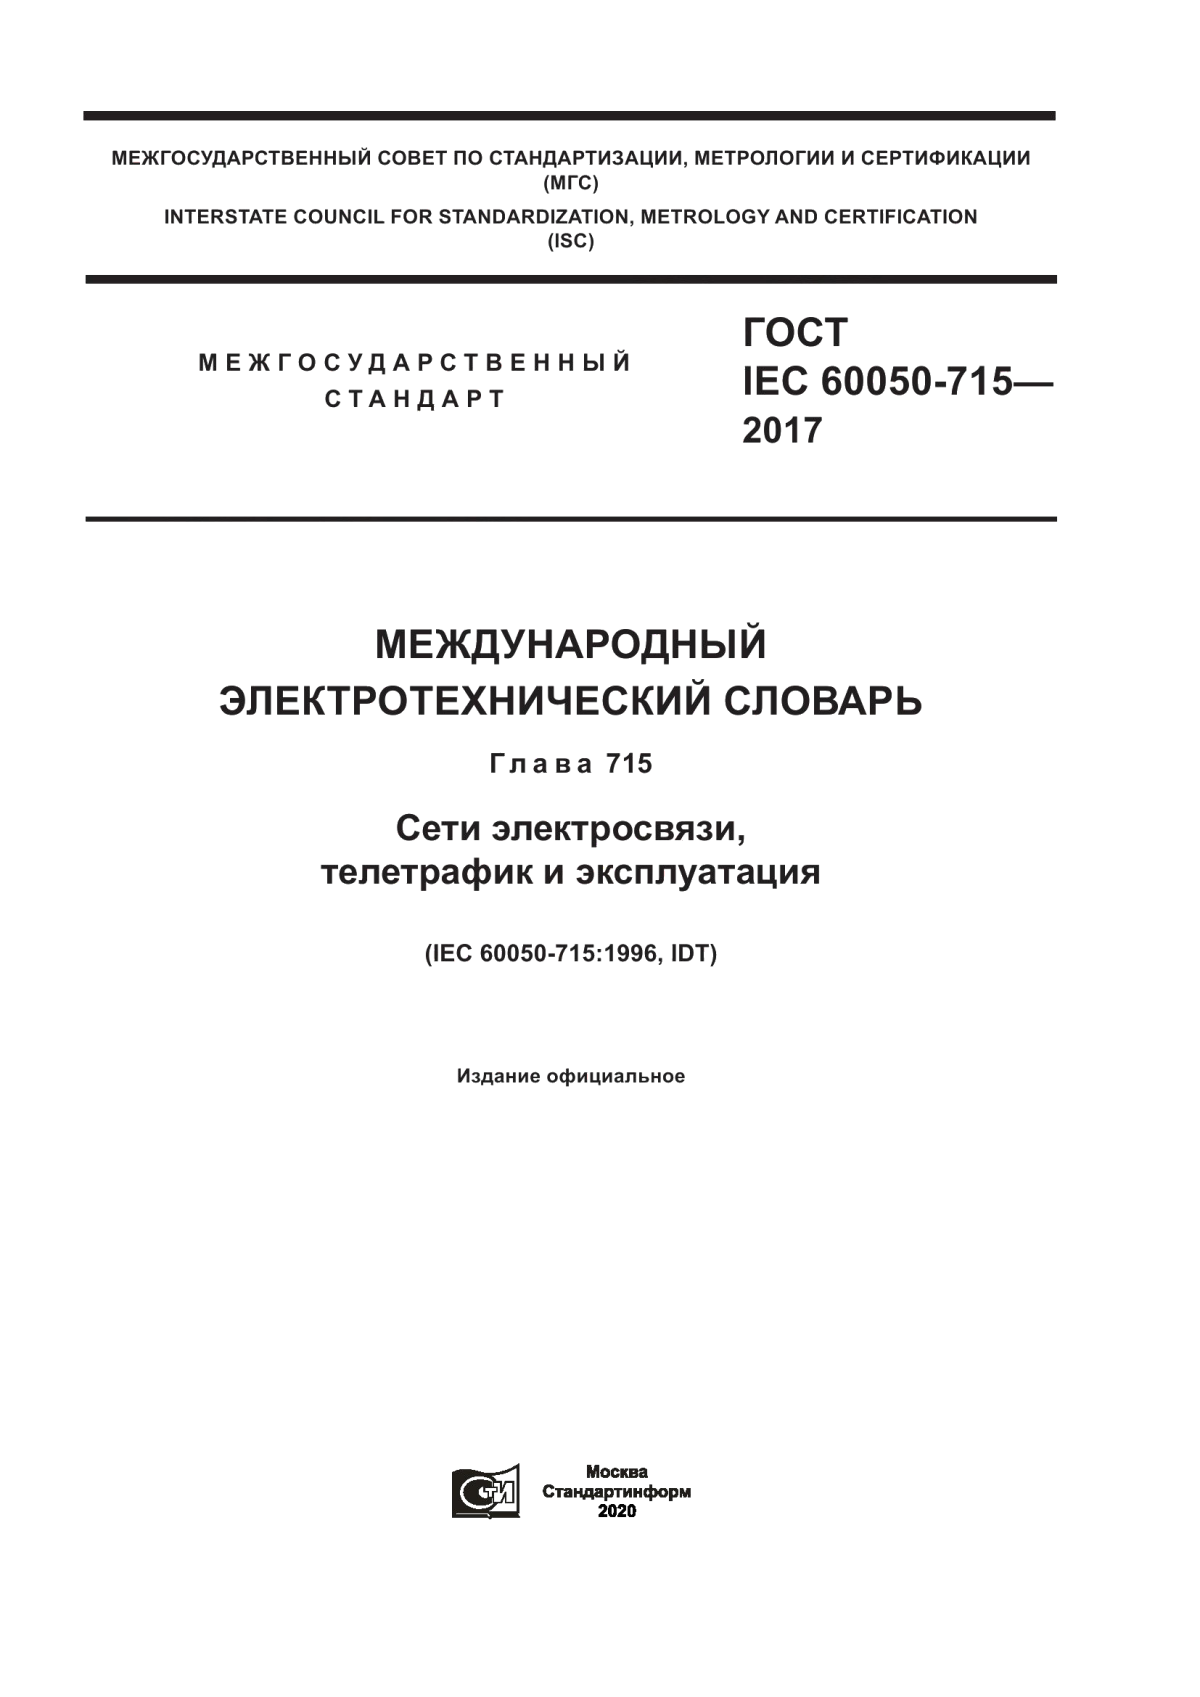 ГОСТ IEC 60050-715-2017 Международный электротехнический словарь. Глава 715. Сети электросвязи, телетрафик и эксплуатация